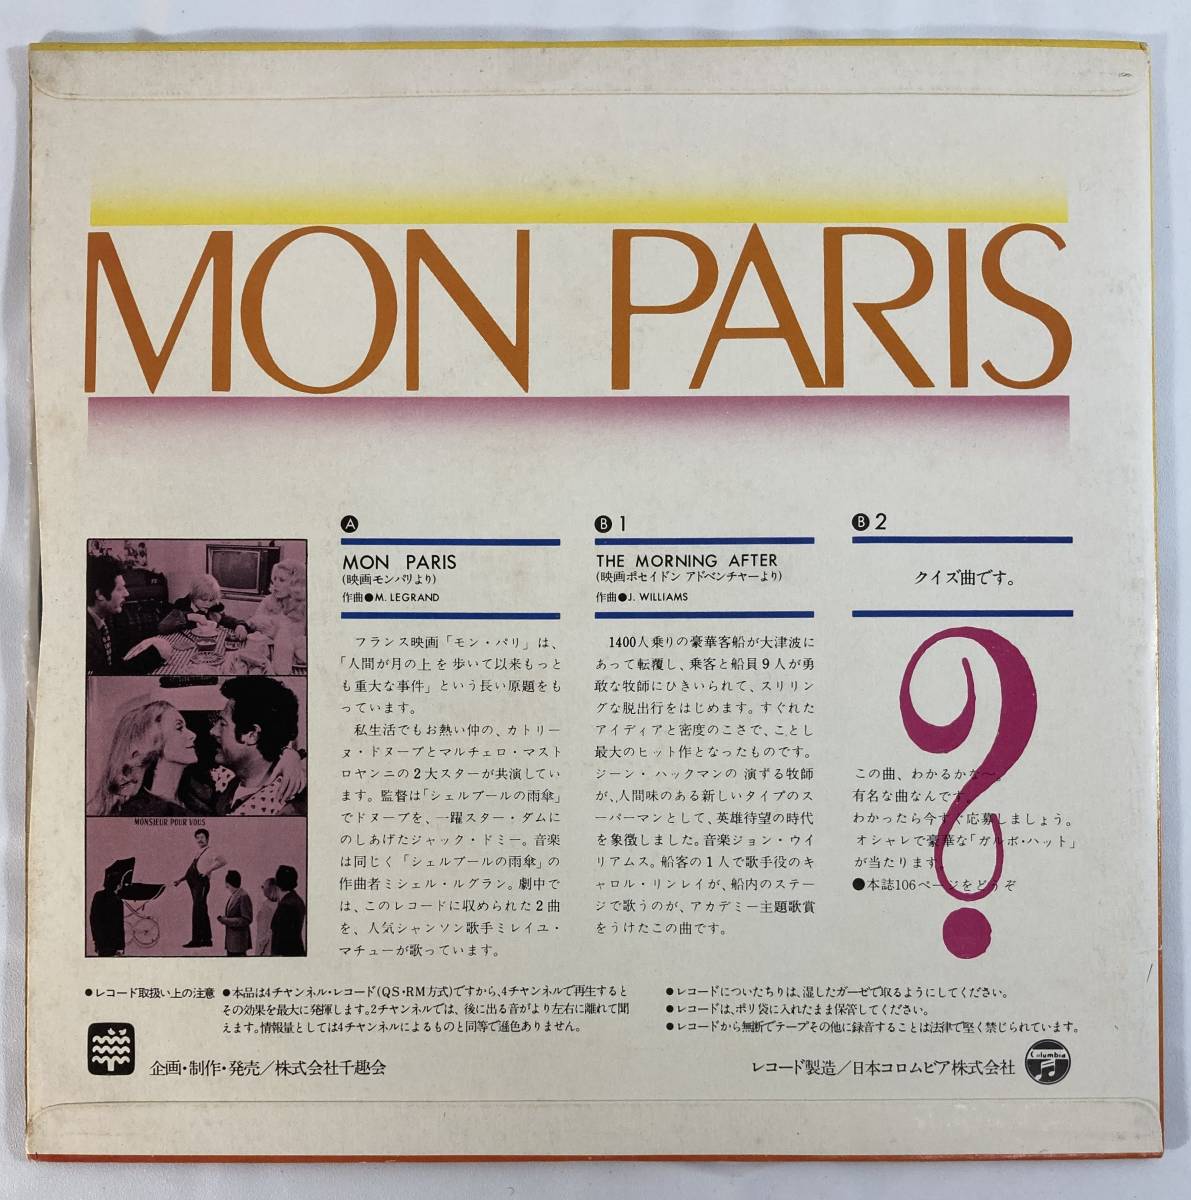 モン・パリ (1973) ミシェル・ルグラン c/w ポセイドン・アドベンチャー (1972) Henri Valery Orchestra 国内盤EP CO PLS 8003 4ch_画像2